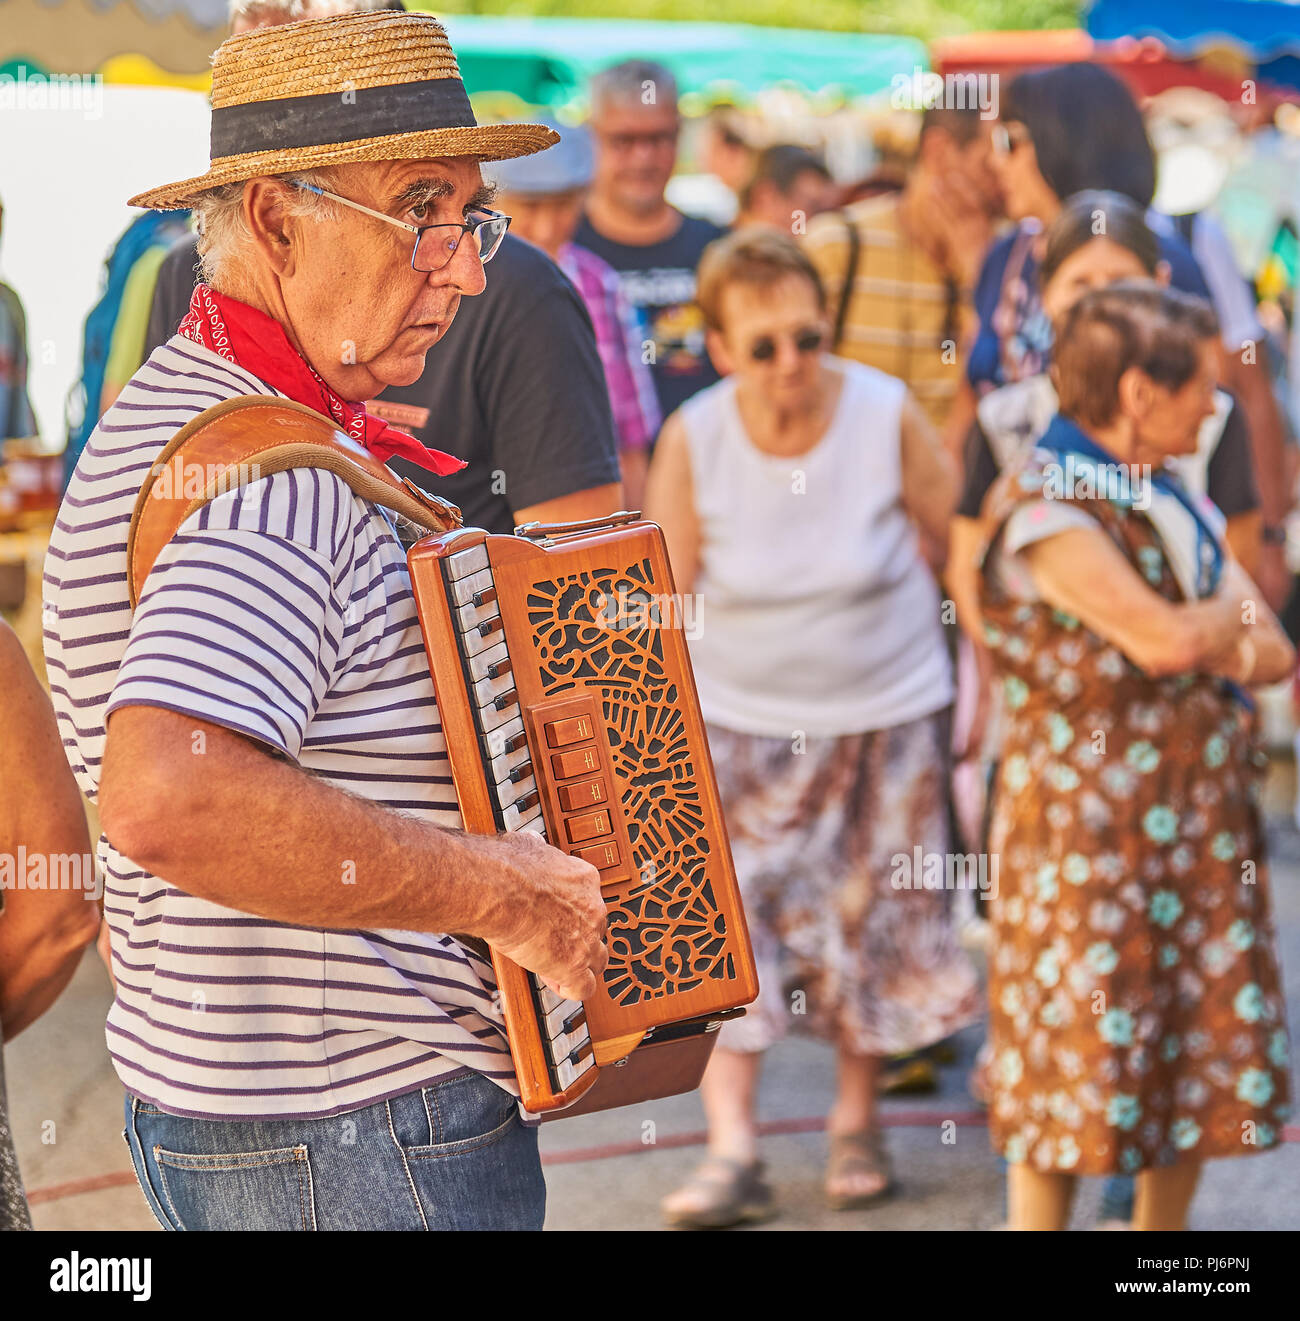 Saint Felicien, Ardeche dipartimento del Rodano Alpi e un lettore di fisarmonica intrattiene la gente alla festa del formaggio. Foto Stock